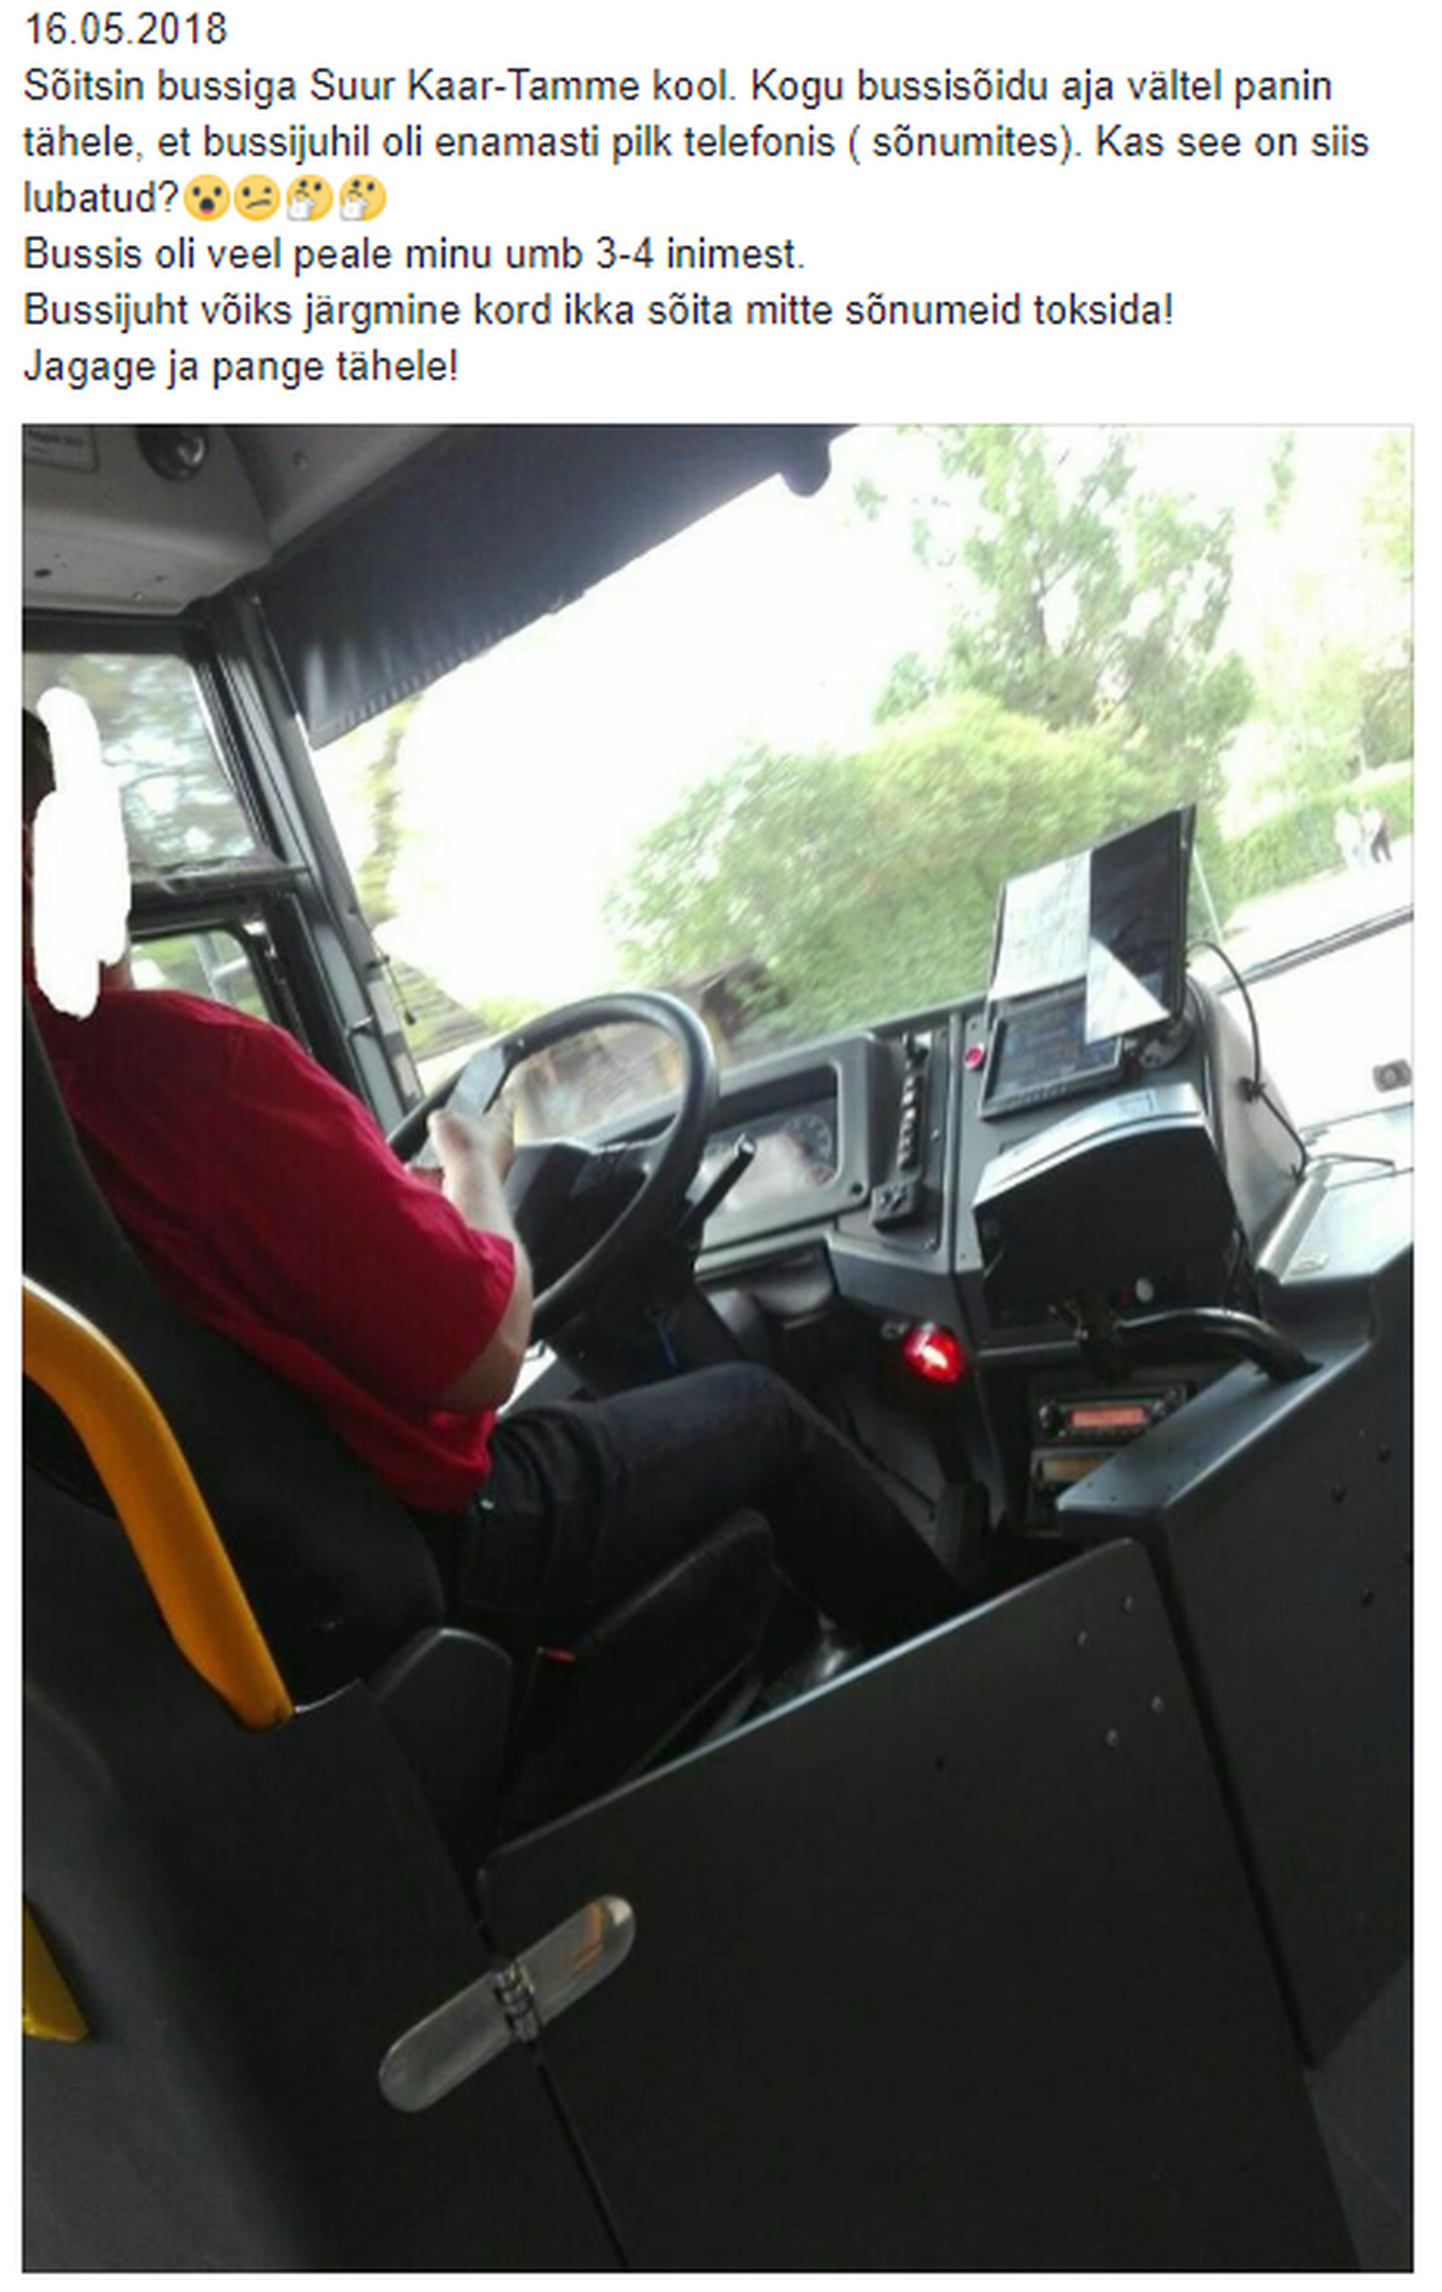 Reisija märkas bussijuhti mobiiliga tegelemas.